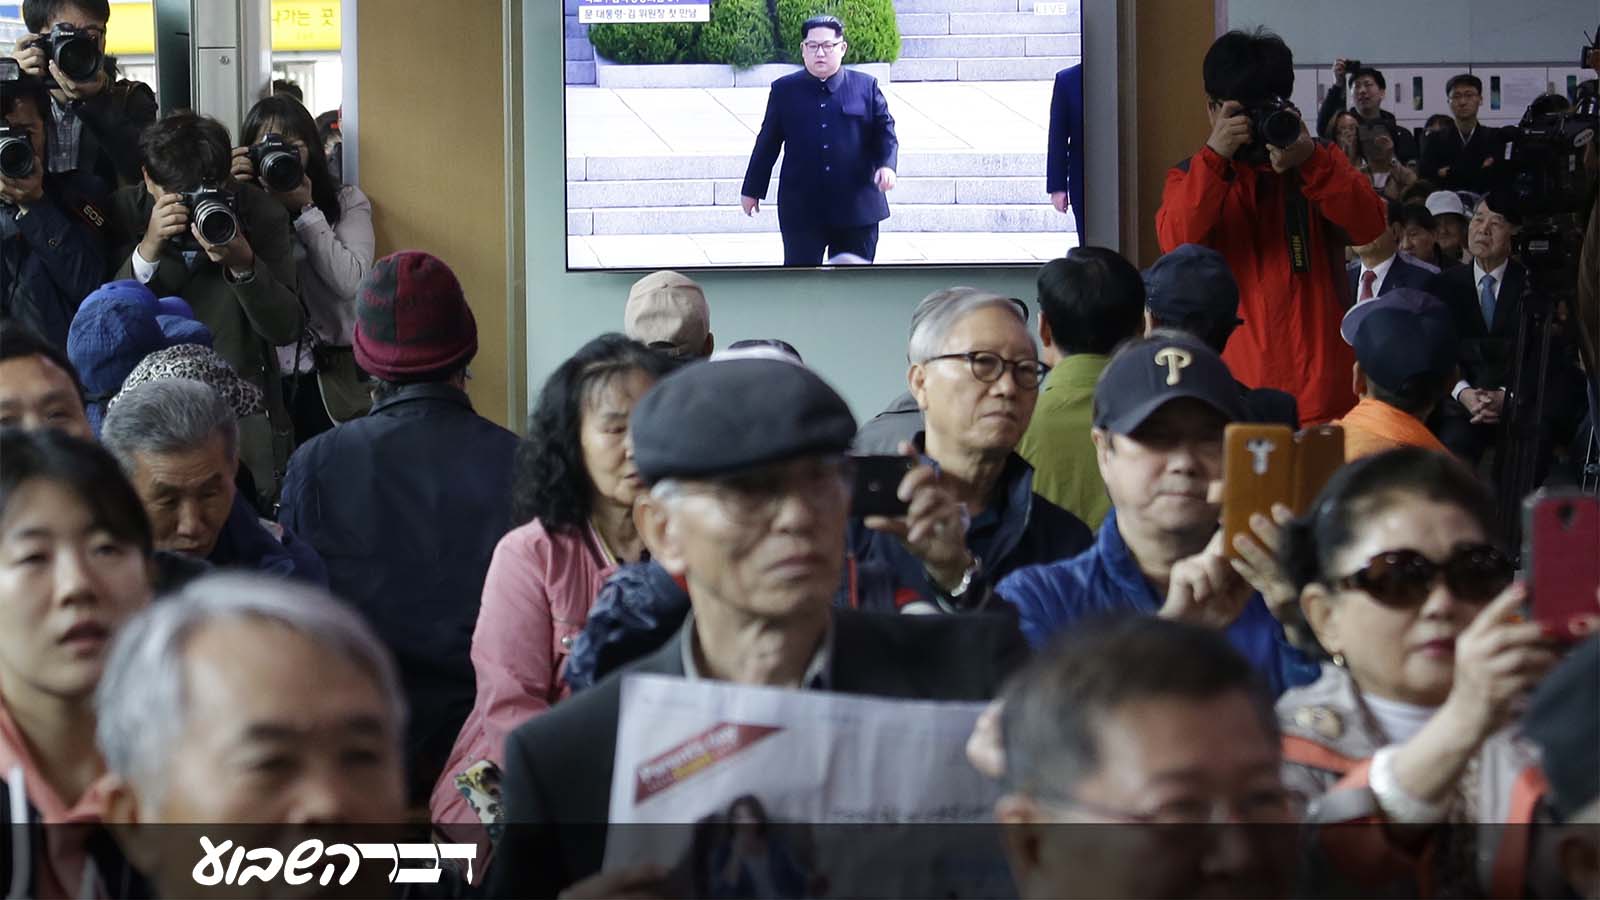 אזרחי קוריאה הדרומית צופים בפגישת מנהיגי קוריאה הדרומית והצפונית באזור המפורז בגבול בין המדינות. 27 באפריל (AP Photo/Ahn Young-joon)